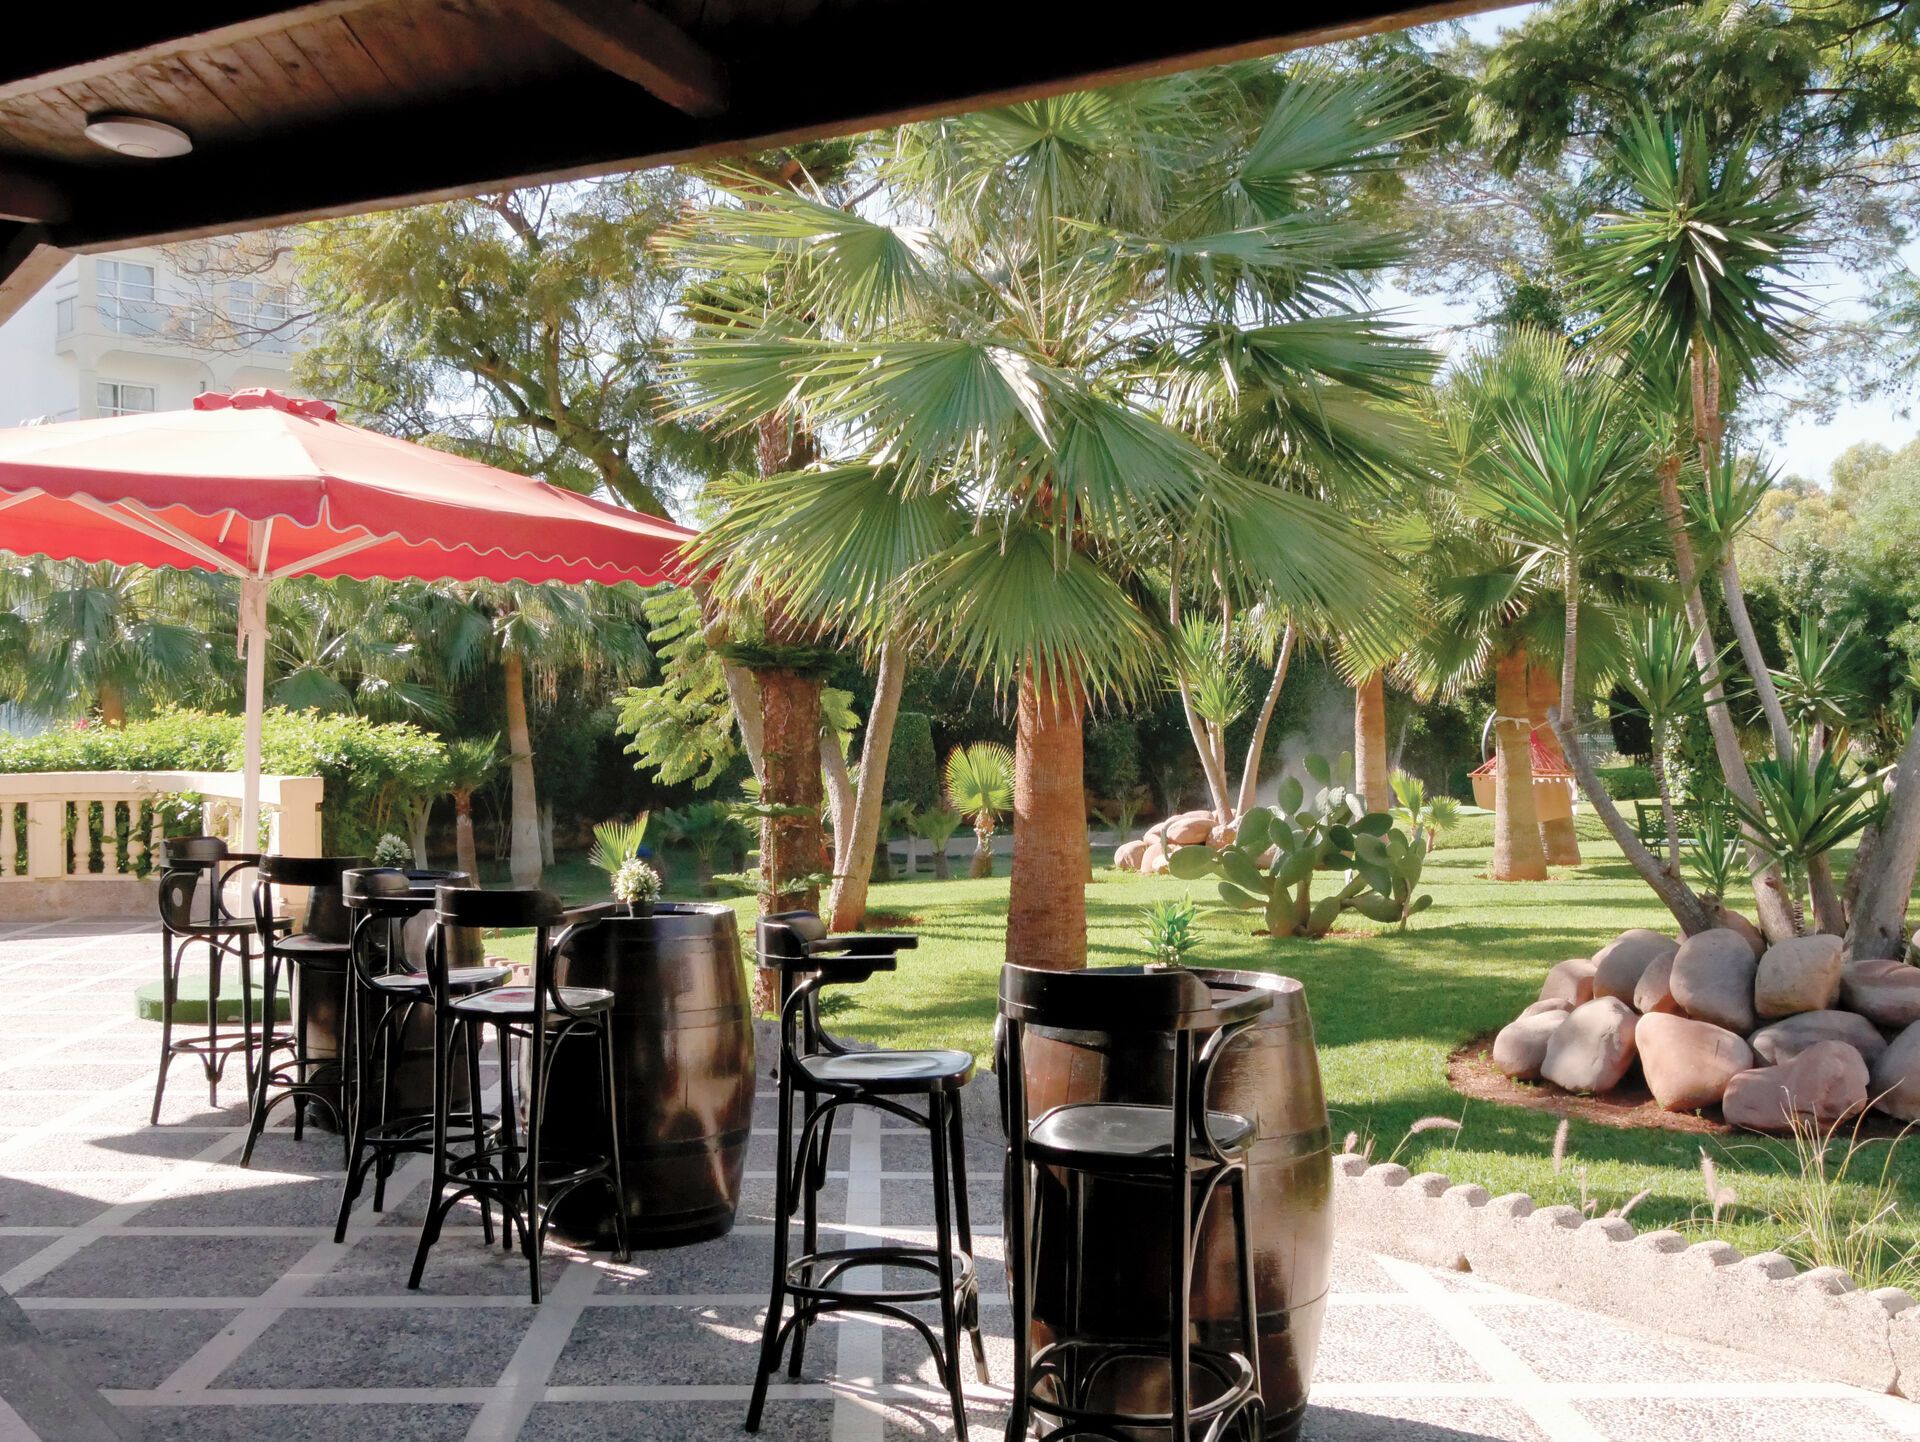 Maroc - Agadir - Odyssee Park Hotel 4*